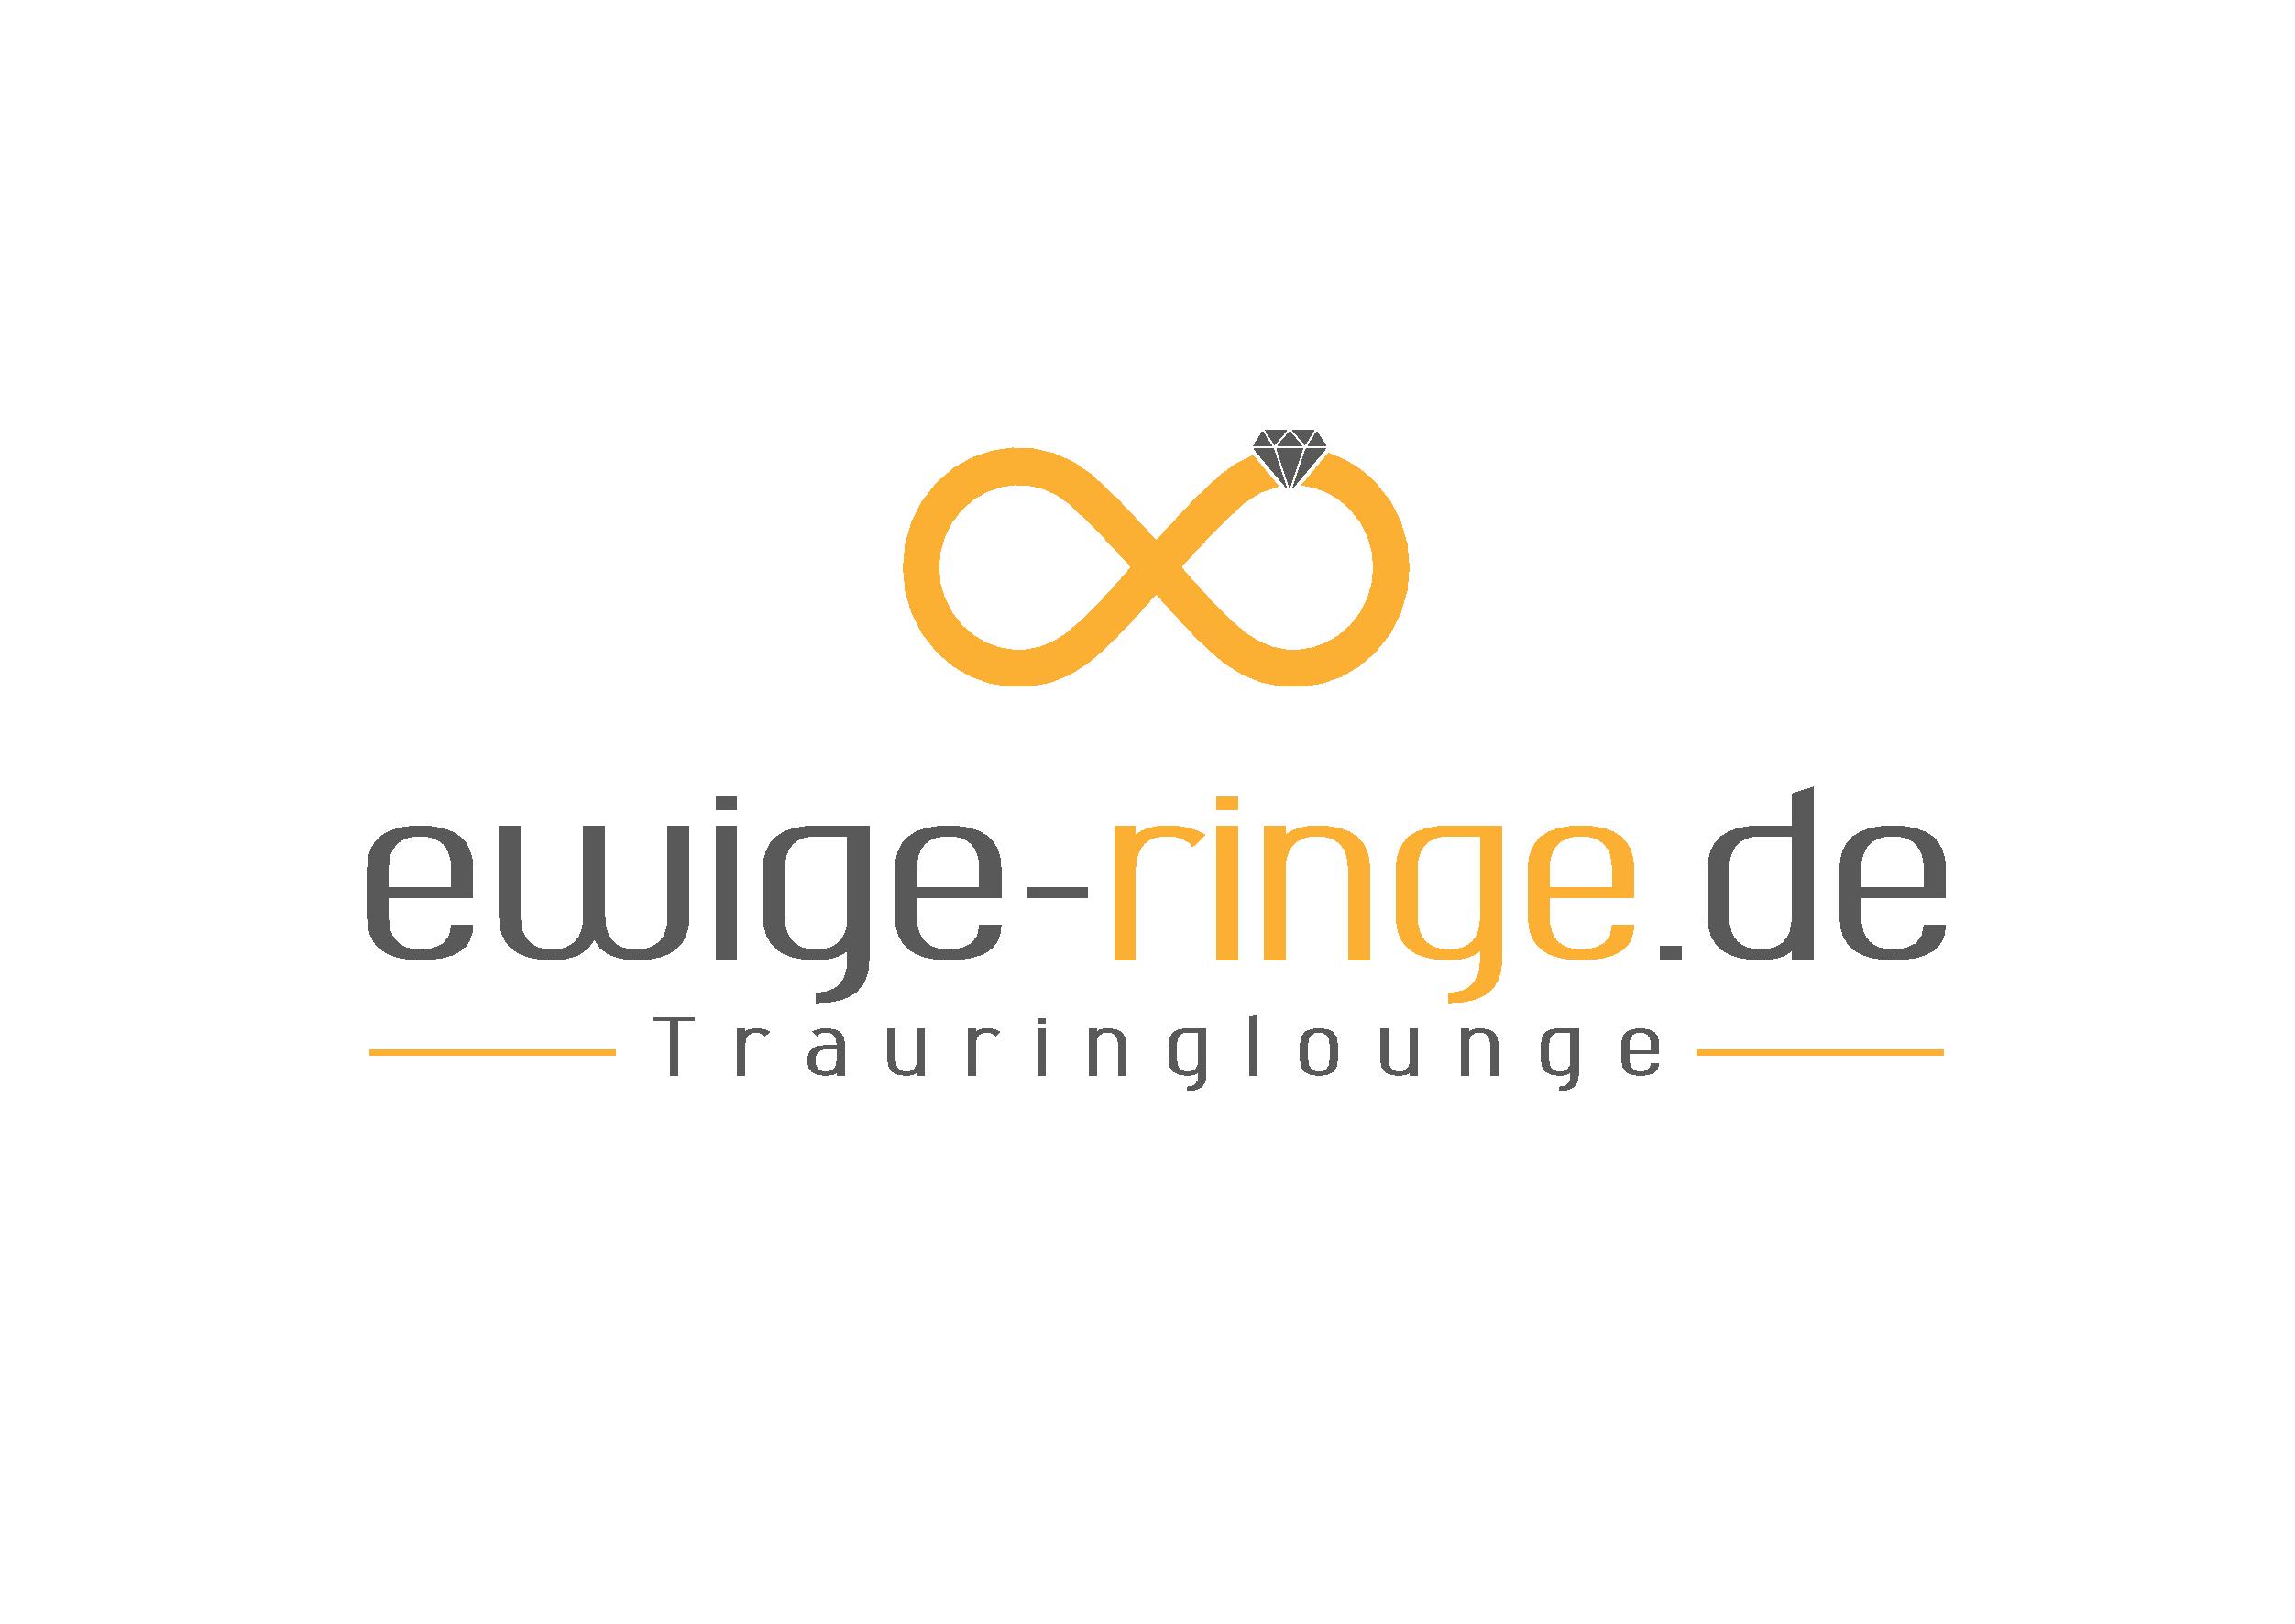 Juwelierlogo ewige-ringe.de Trauringlounge